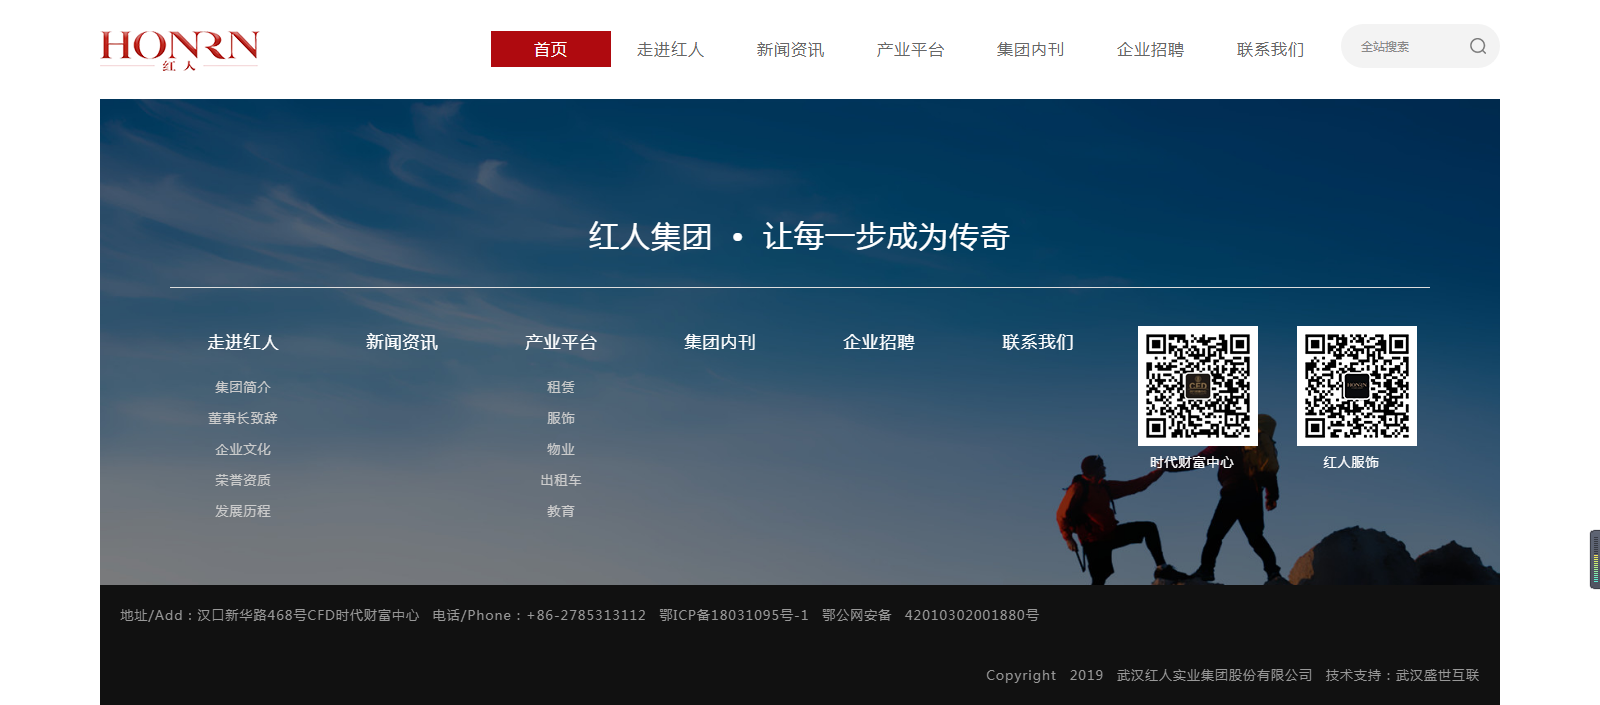 武汉红人实业集团股份有限公司网站建设案例—武汉盛世互联